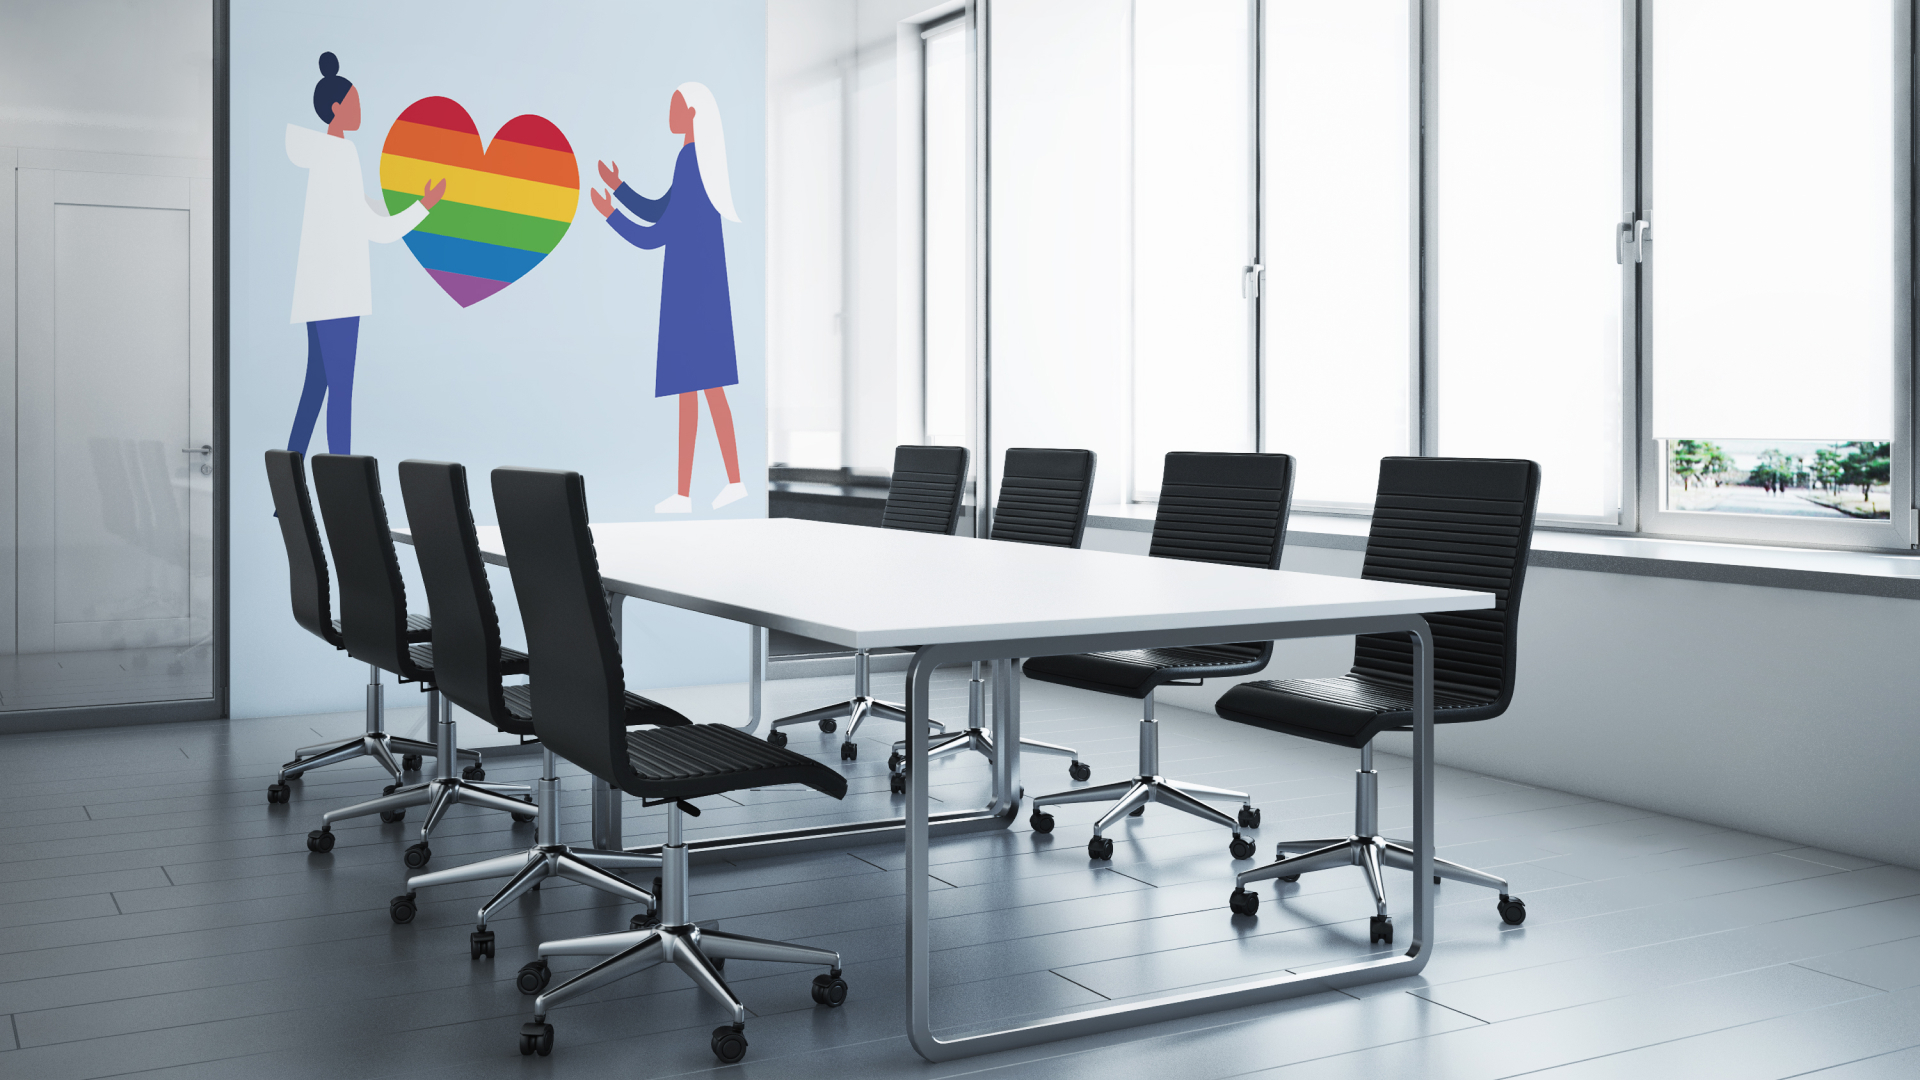 Ein Konferenzraum mit weissem Tisch und schwarzen Stühlen, an der Wand ein Bild mit zwei Menschen, die zwischen sich ein Herz in Regenbogenfarben halten